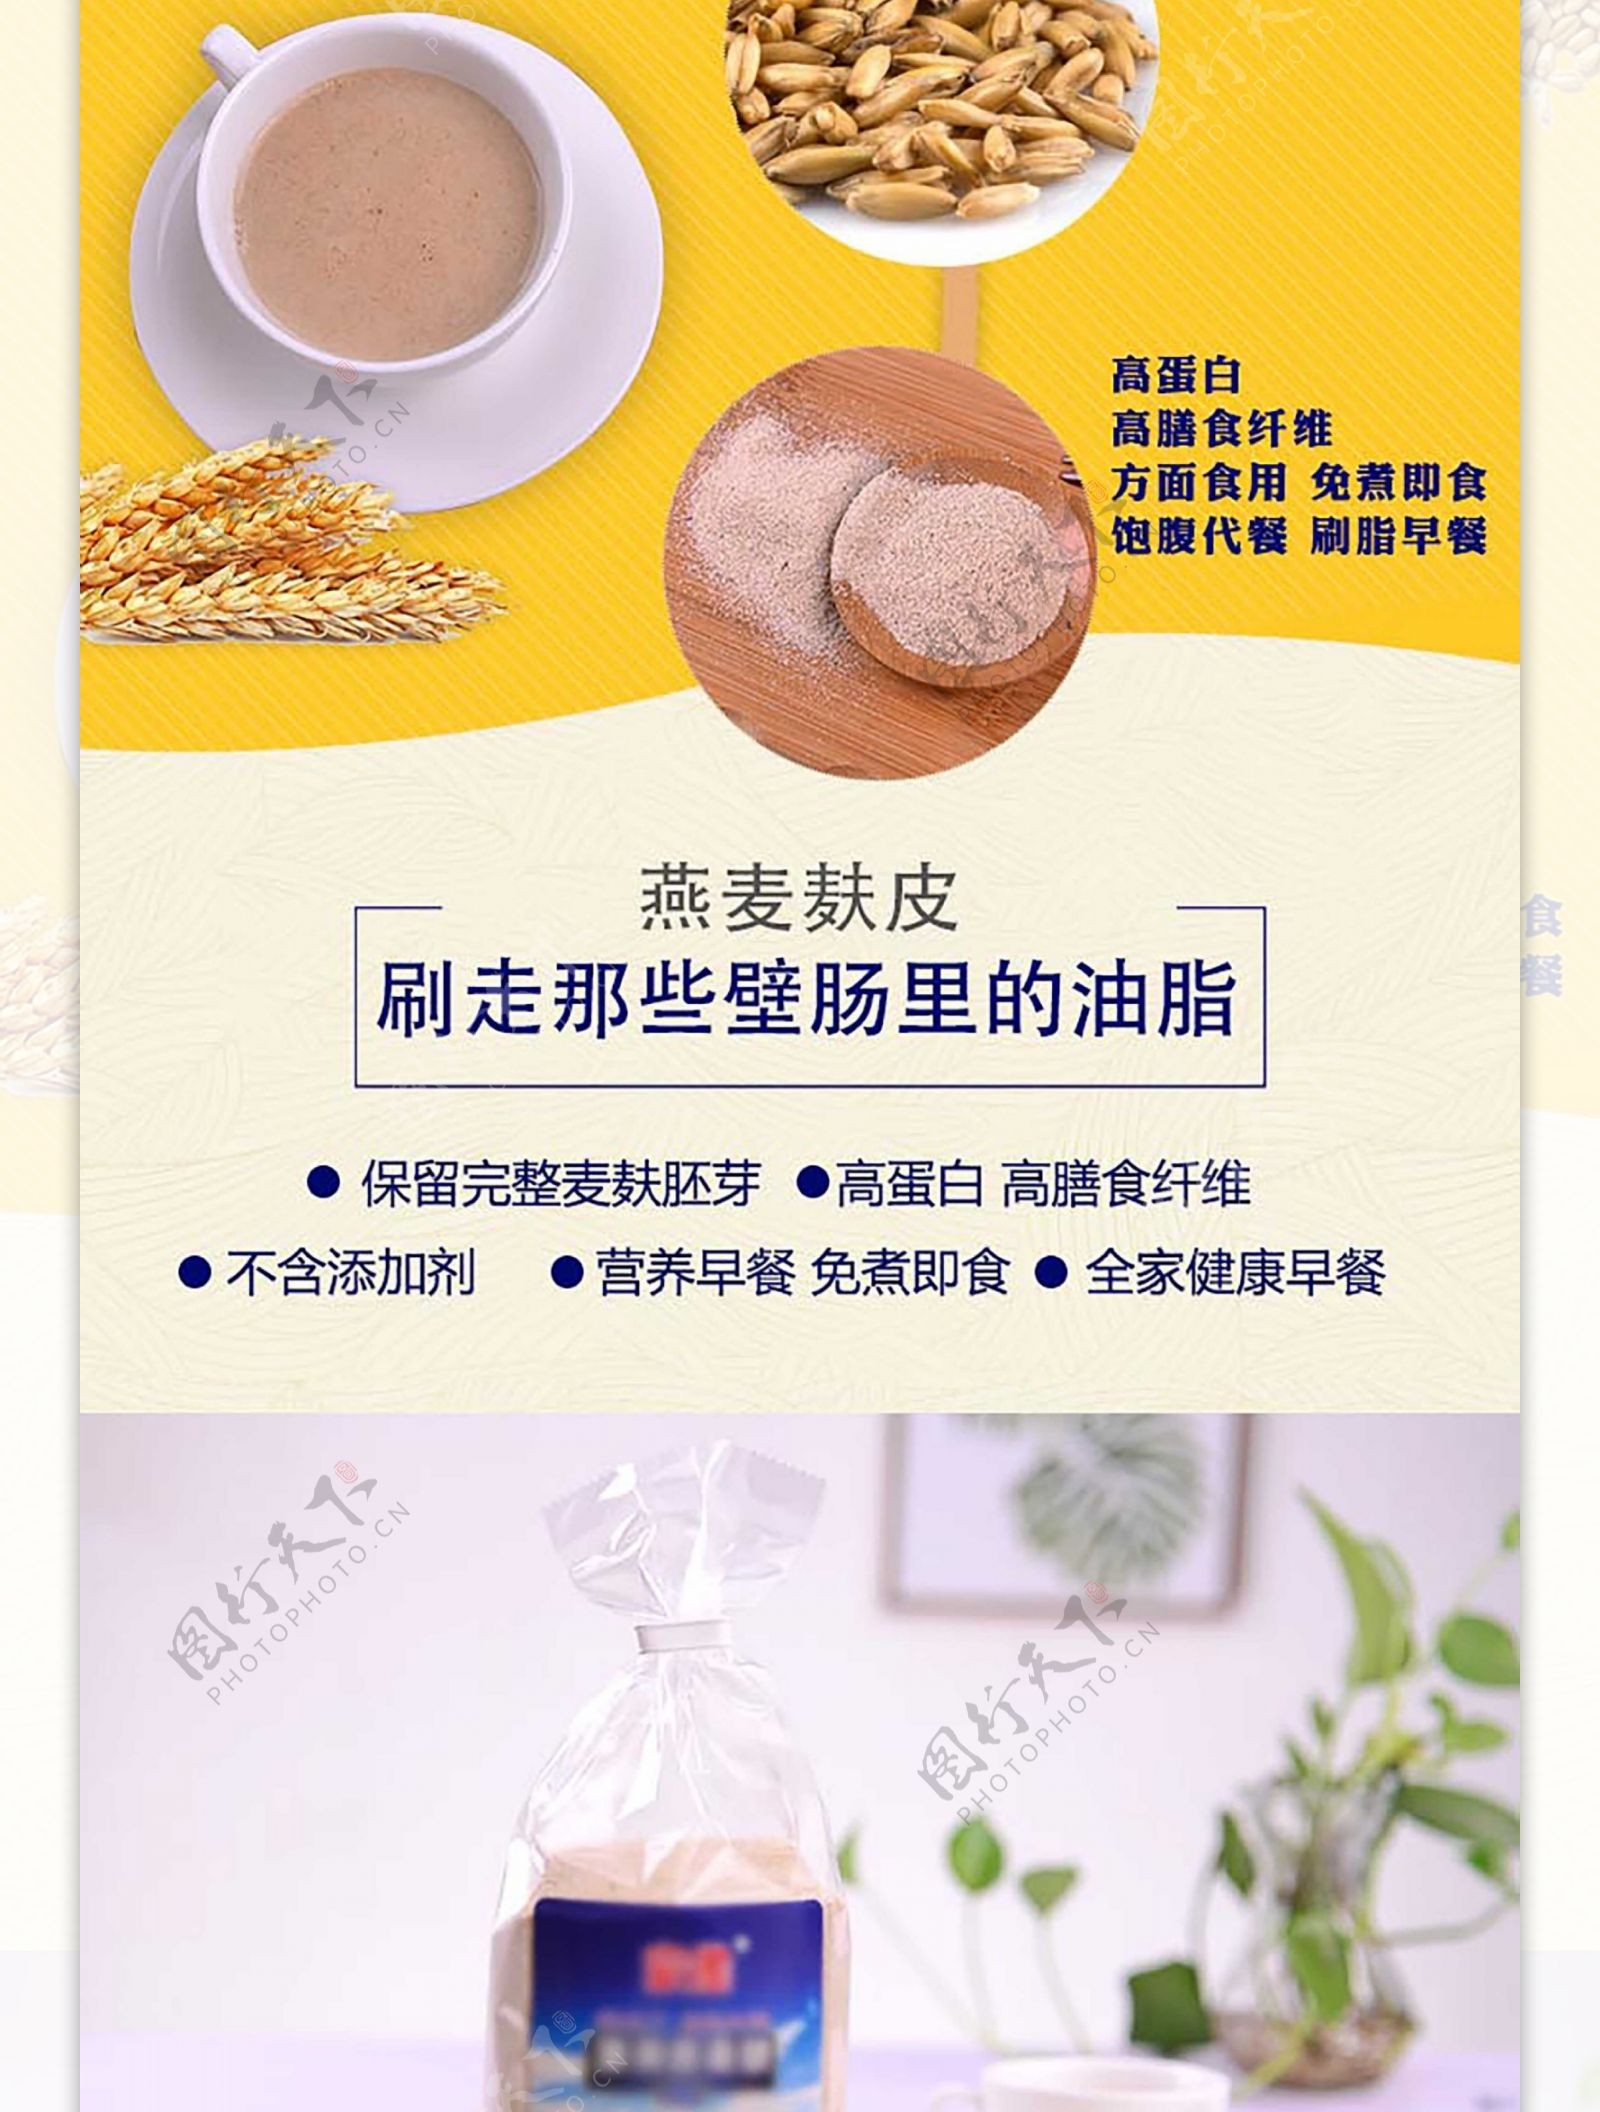 燕麦麸皮燕麦片小麦粗粮食品详情页详情设计